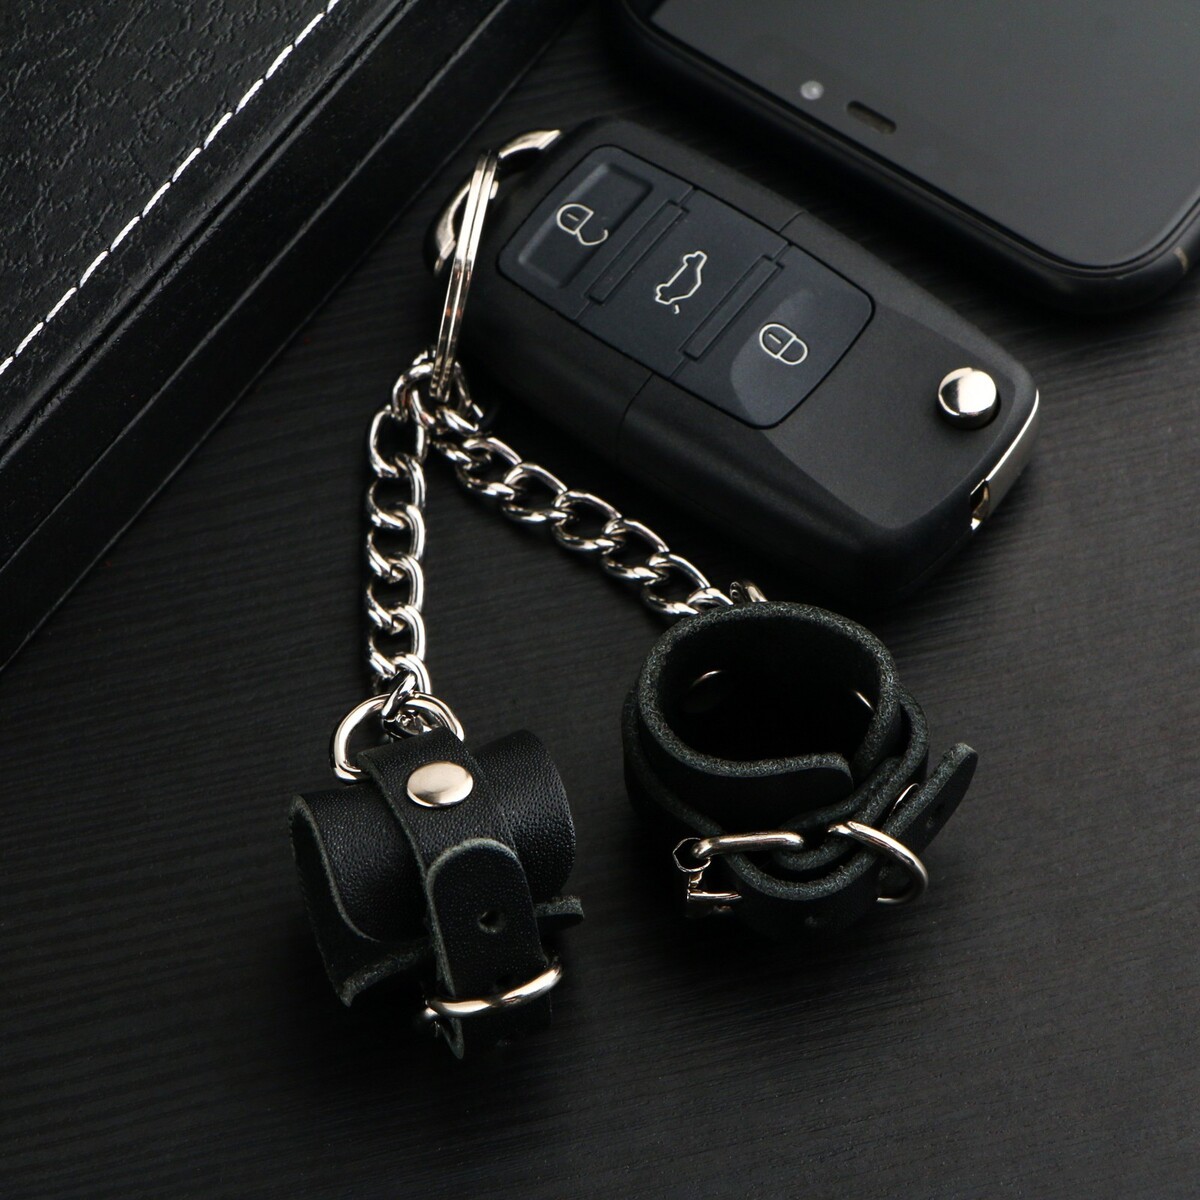 Брелок для автомобильного ключа, наручники, натуральная кожа No brand